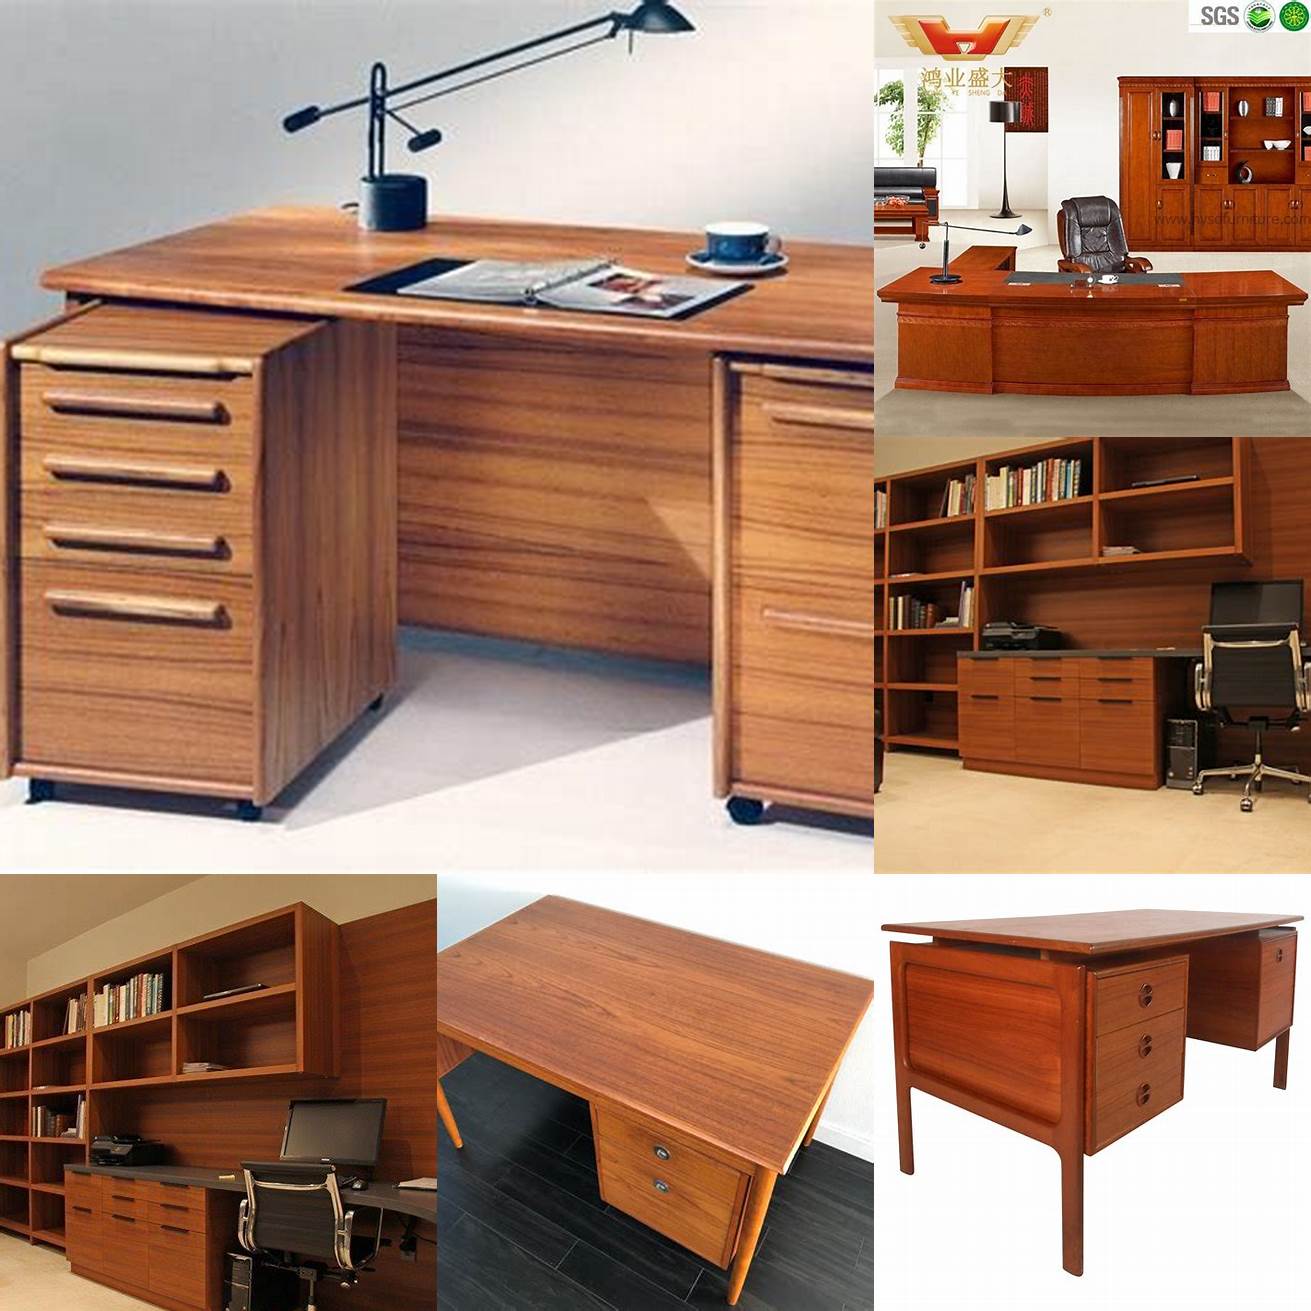 Teak wood office furniture